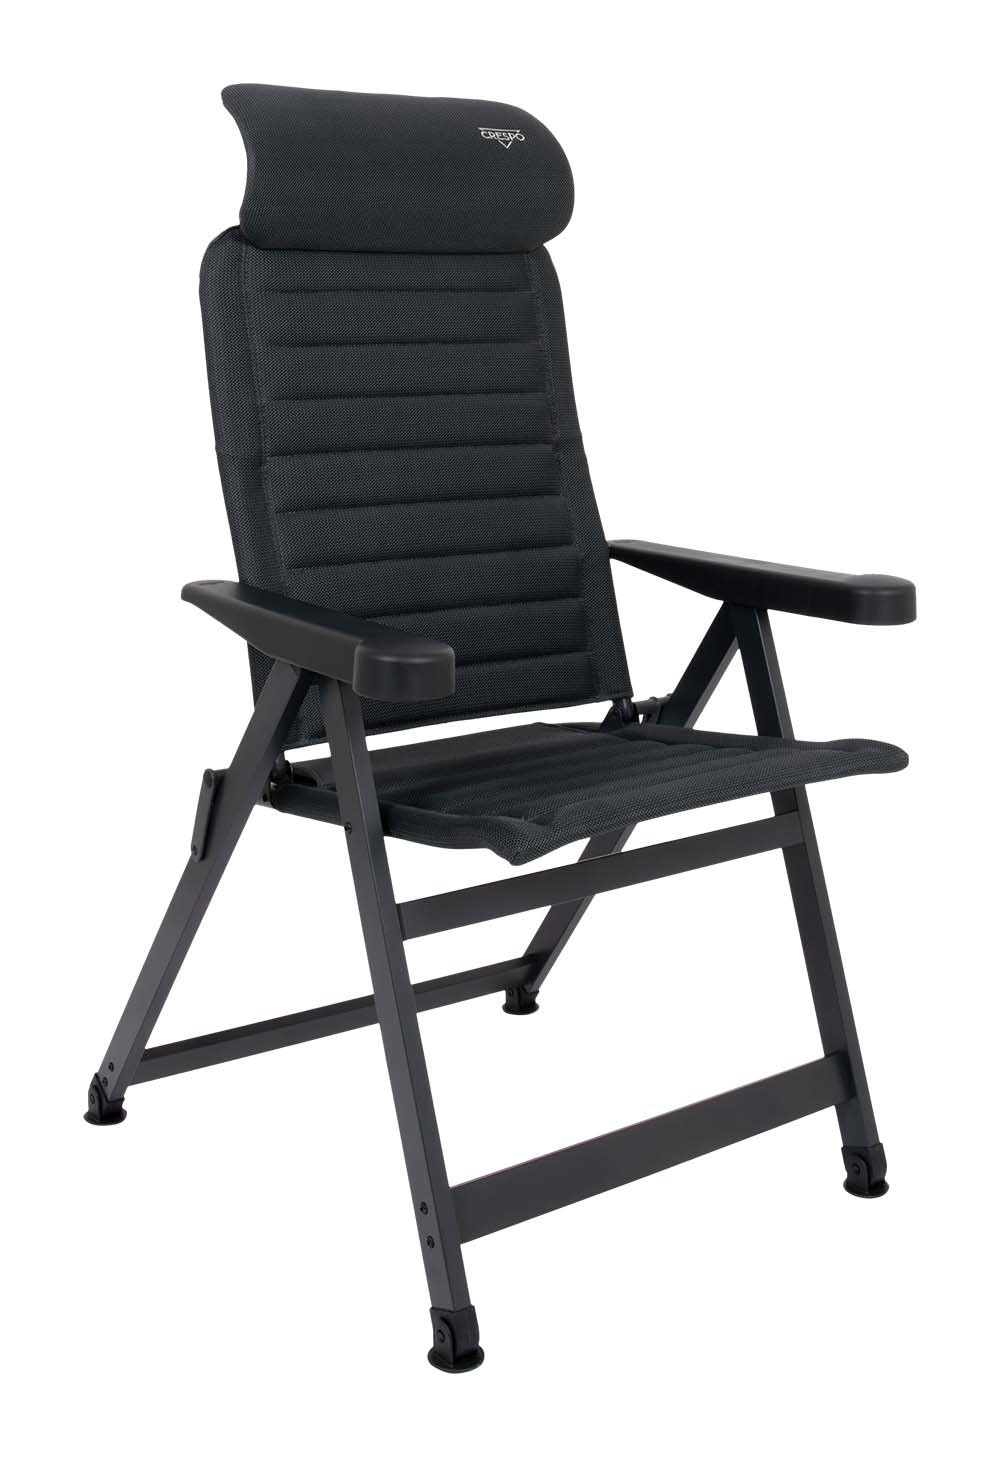 1149505 Een ergonomische in 7 standen verstelbare standenstoel. De stoel is uitgevoerd in een vierkant frame en voorzien van stabilisatievoeten waardoor de stoel altijd zeer stevig staat. Daarnaast is de stoel voorzien van een verstelbare hoofdsteun. De zeer comfortabele en chique stoffering is extra luchtdoorlatend en houdt door de open celstructuur geen vocht vast. Hierdoor is de stoel veel sneller droog dan stoelen met een traditionele schuimvulling. Biedt maximaal comfort door de in 7 standen verstelbare rugleuning. Zowel de rugleuning als de armleggers zijn ergonomisch gevormd. De stoel is voorzien van een geanodiseerd H-frame voor extra stabiliteit en stevigheid. Door zijn unieke ontwerp is de stoel compact in te klappen en gemakkelijk mee te nemen.